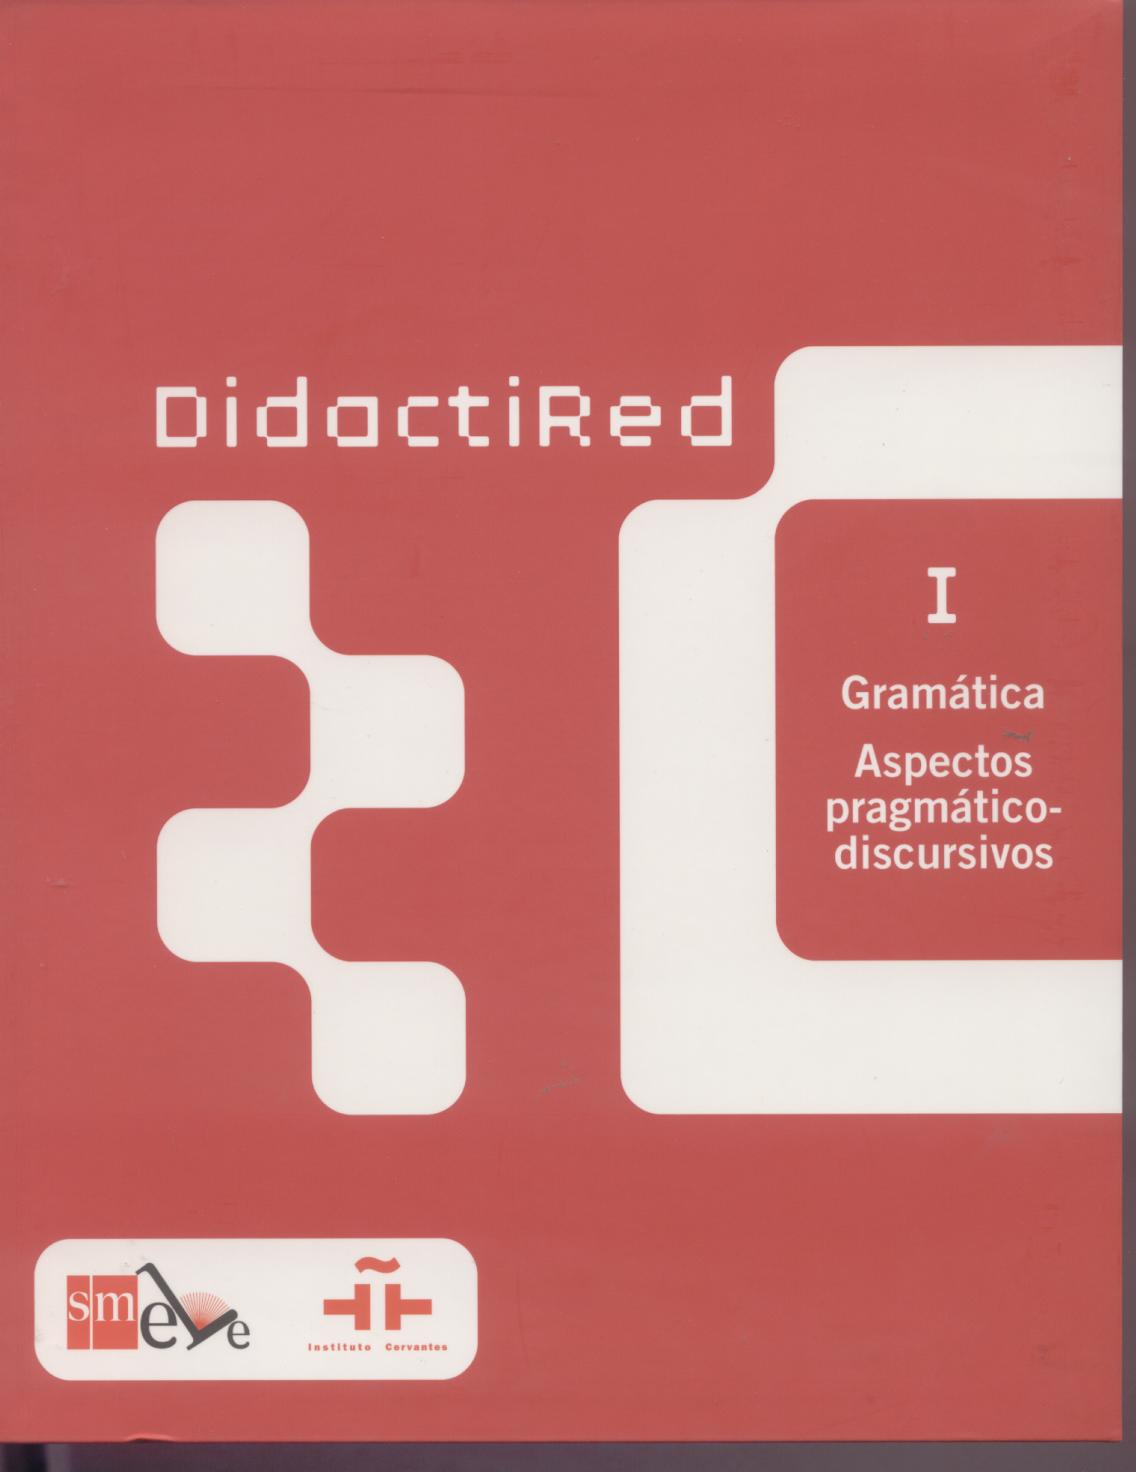 DIDACTIRED 1 GRAMÁTICA*